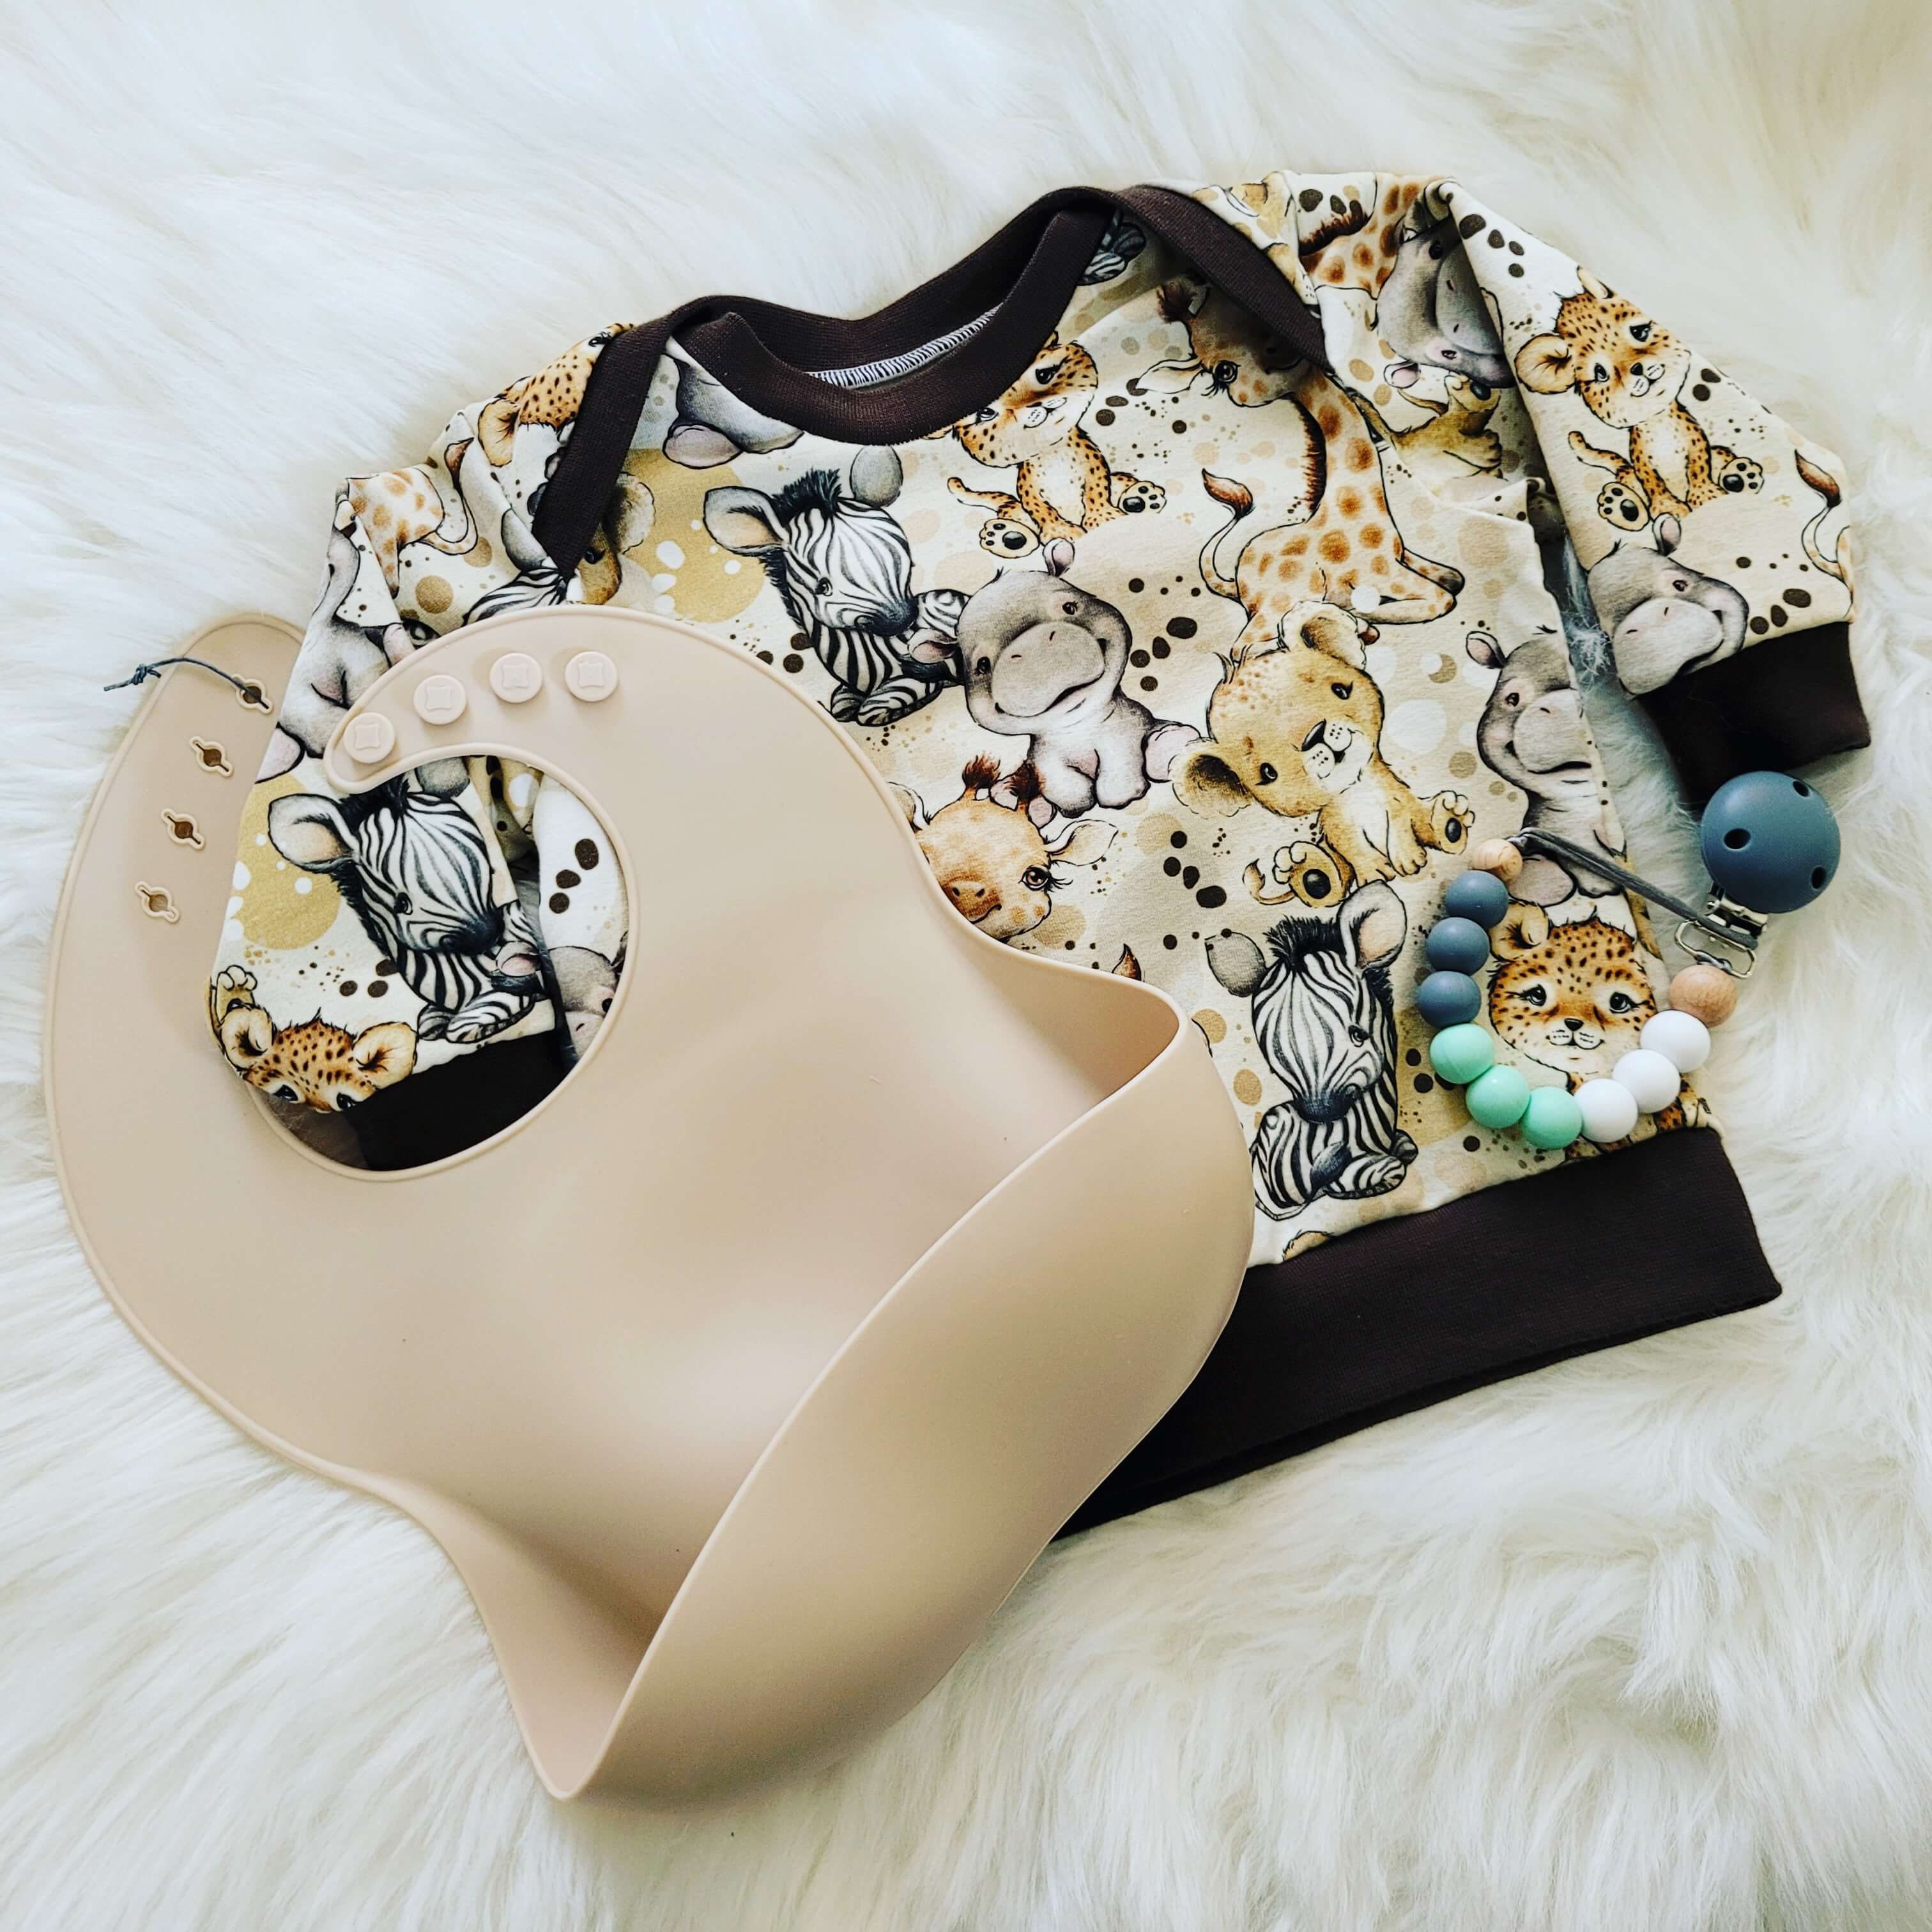 Moose and Goose Gifts - Handmade sweatshirt top - baby gift - New baby gift 